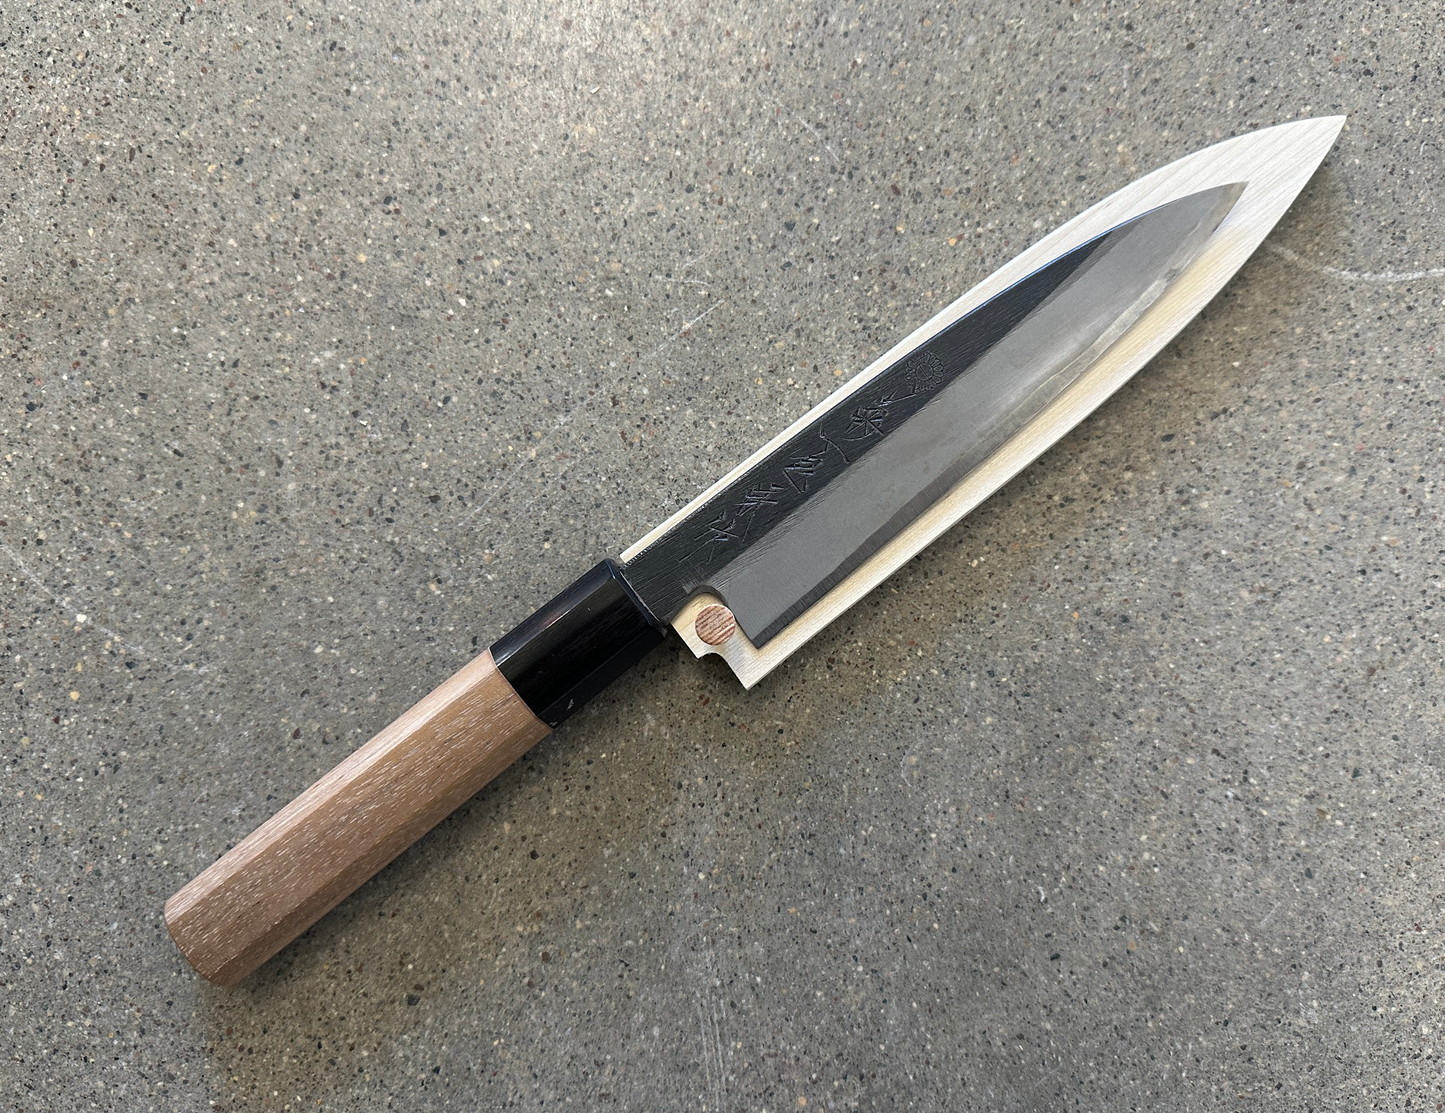 6 Deejo Steak Knives, Ebony Wood / Japanese